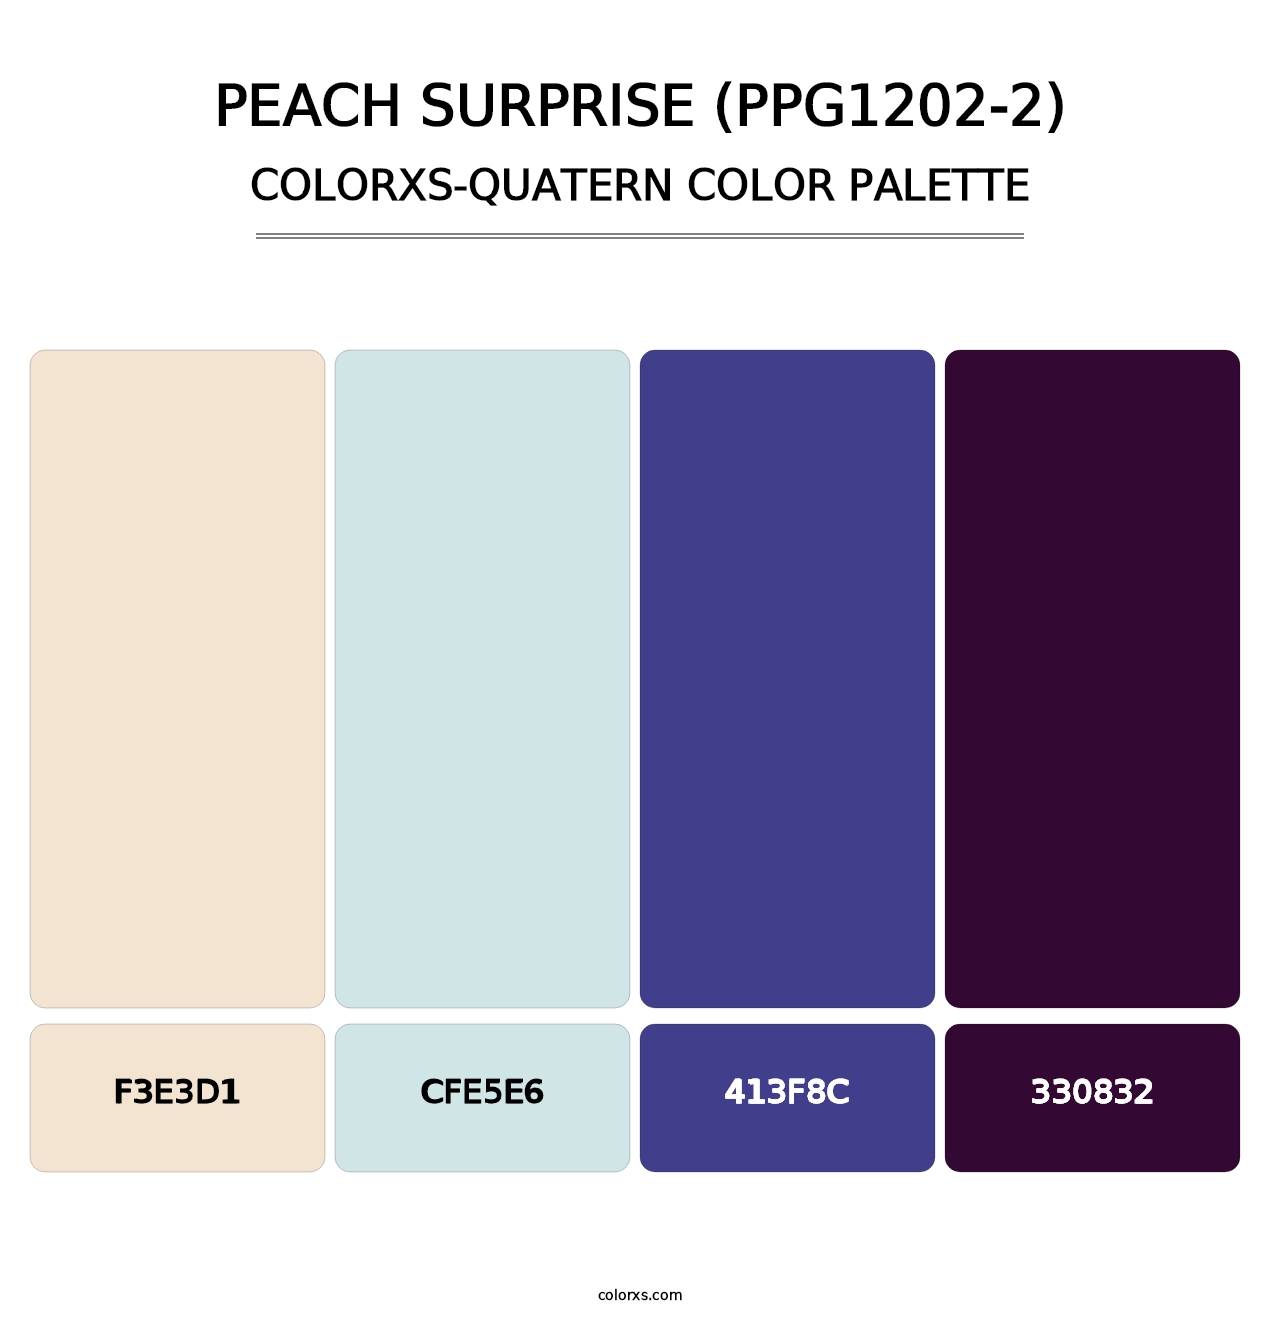 Peach Surprise (PPG1202-2) - Colorxs Quatern Palette